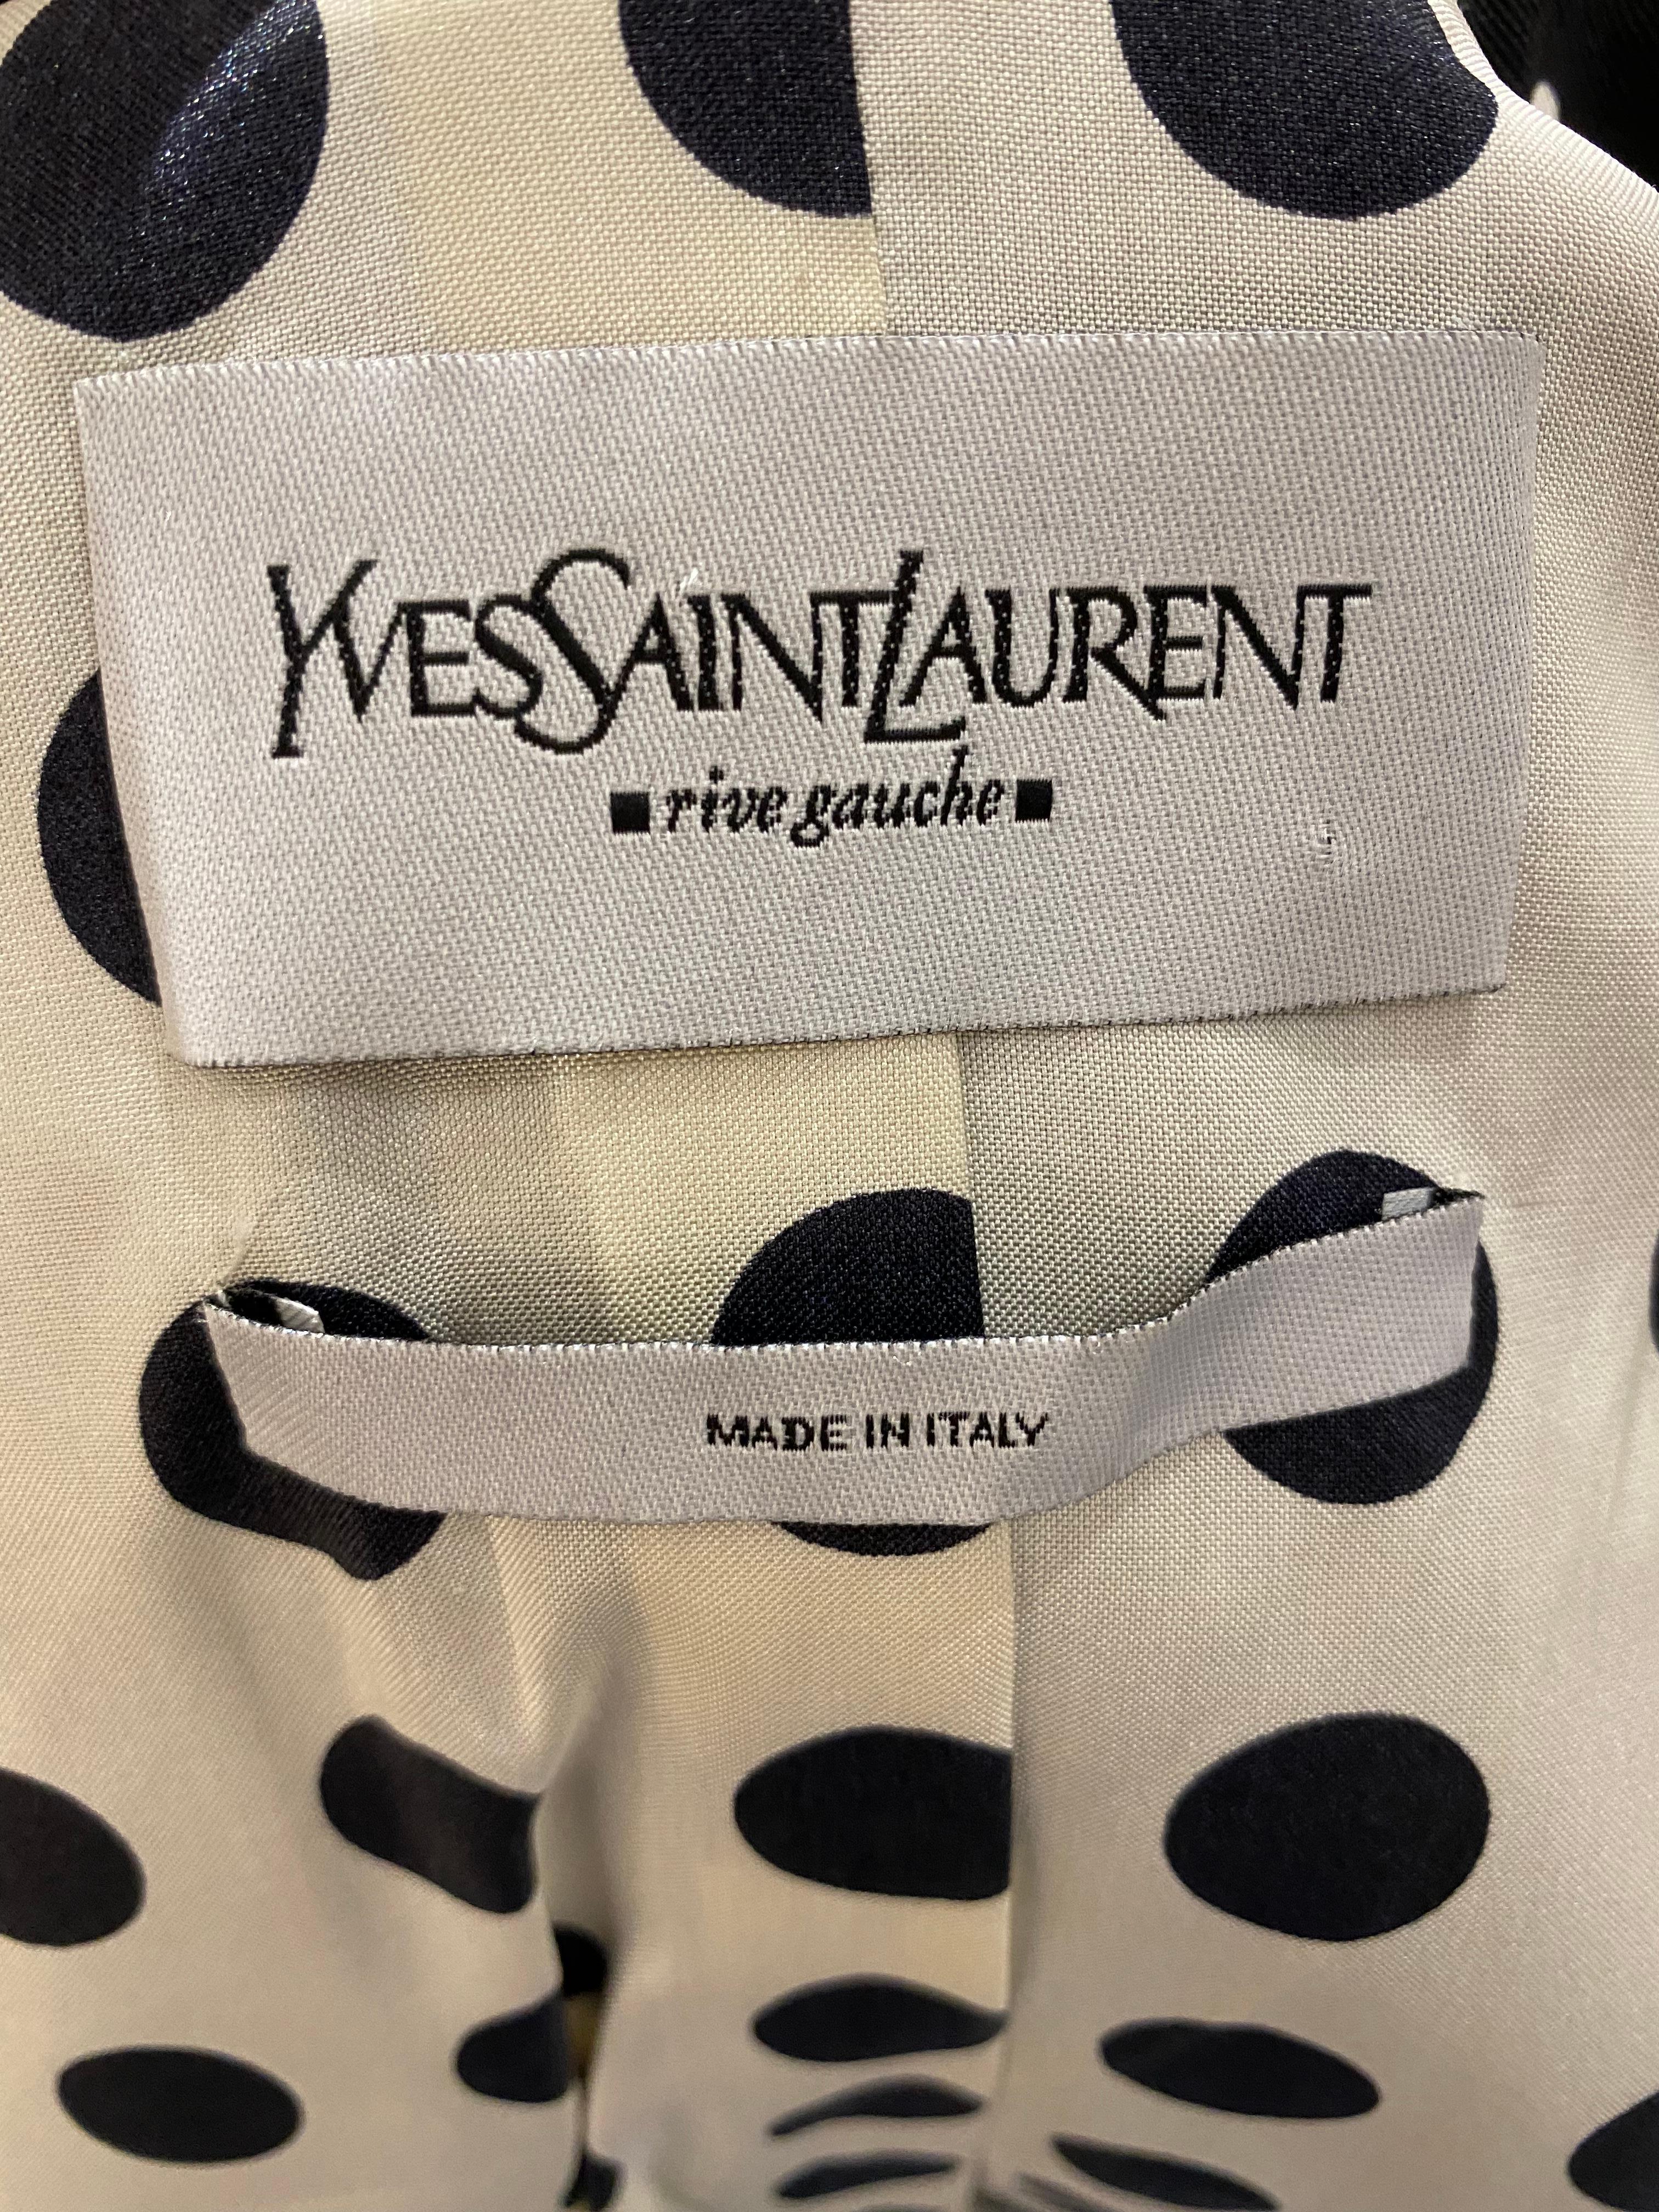 Women's 2000s Yves Saint Laurent by Stefano Pilati Polkadot Jacket Pant Suit For Sale